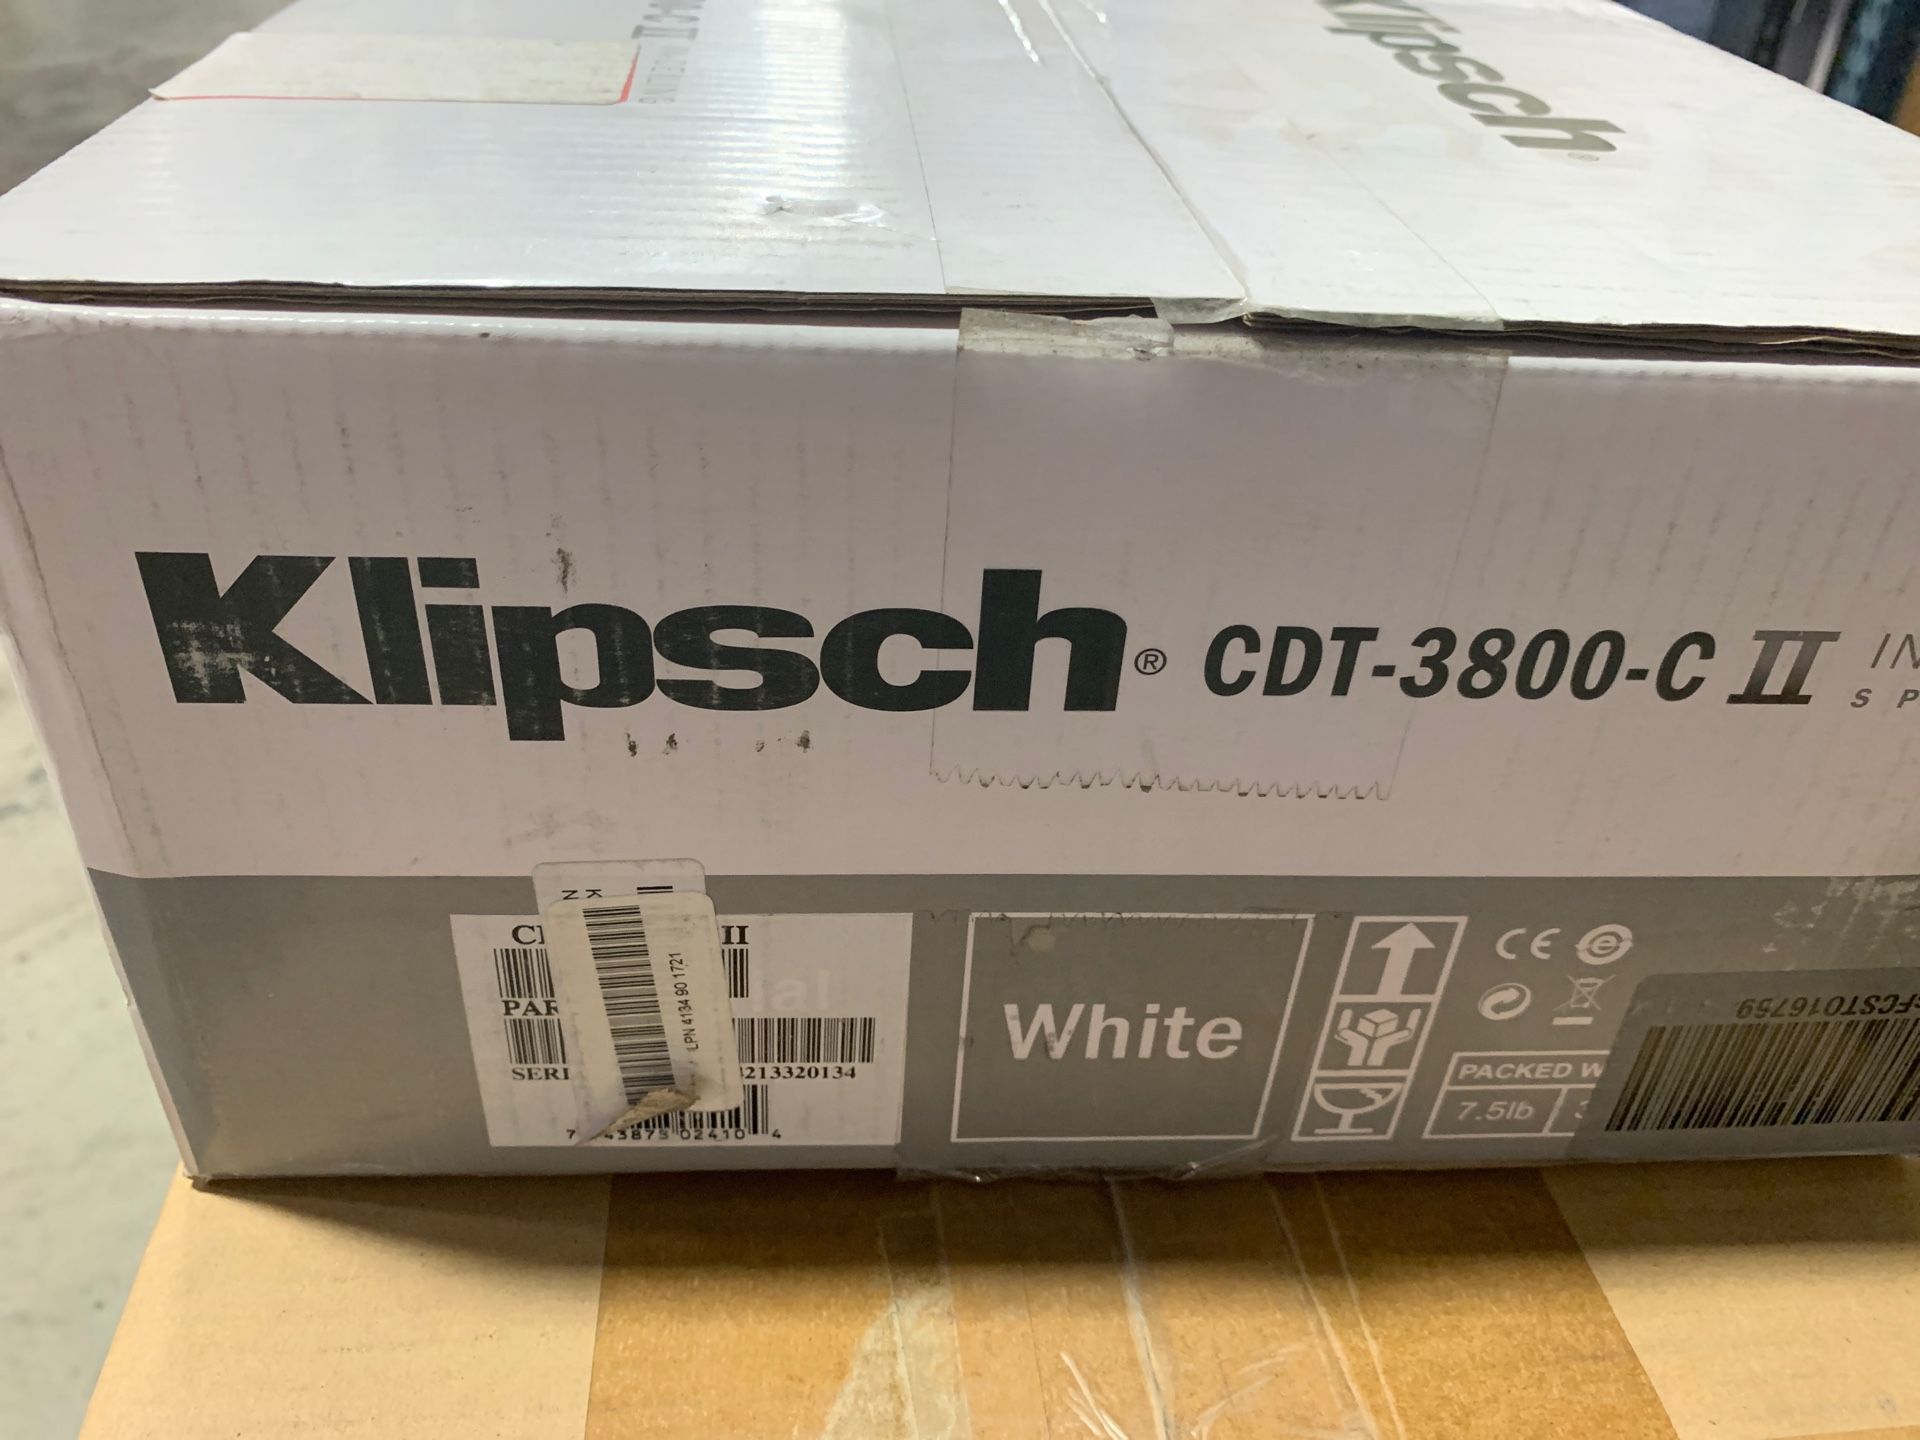 KLIPSCH in ceiling speaker CDT-3800-C II open box like new